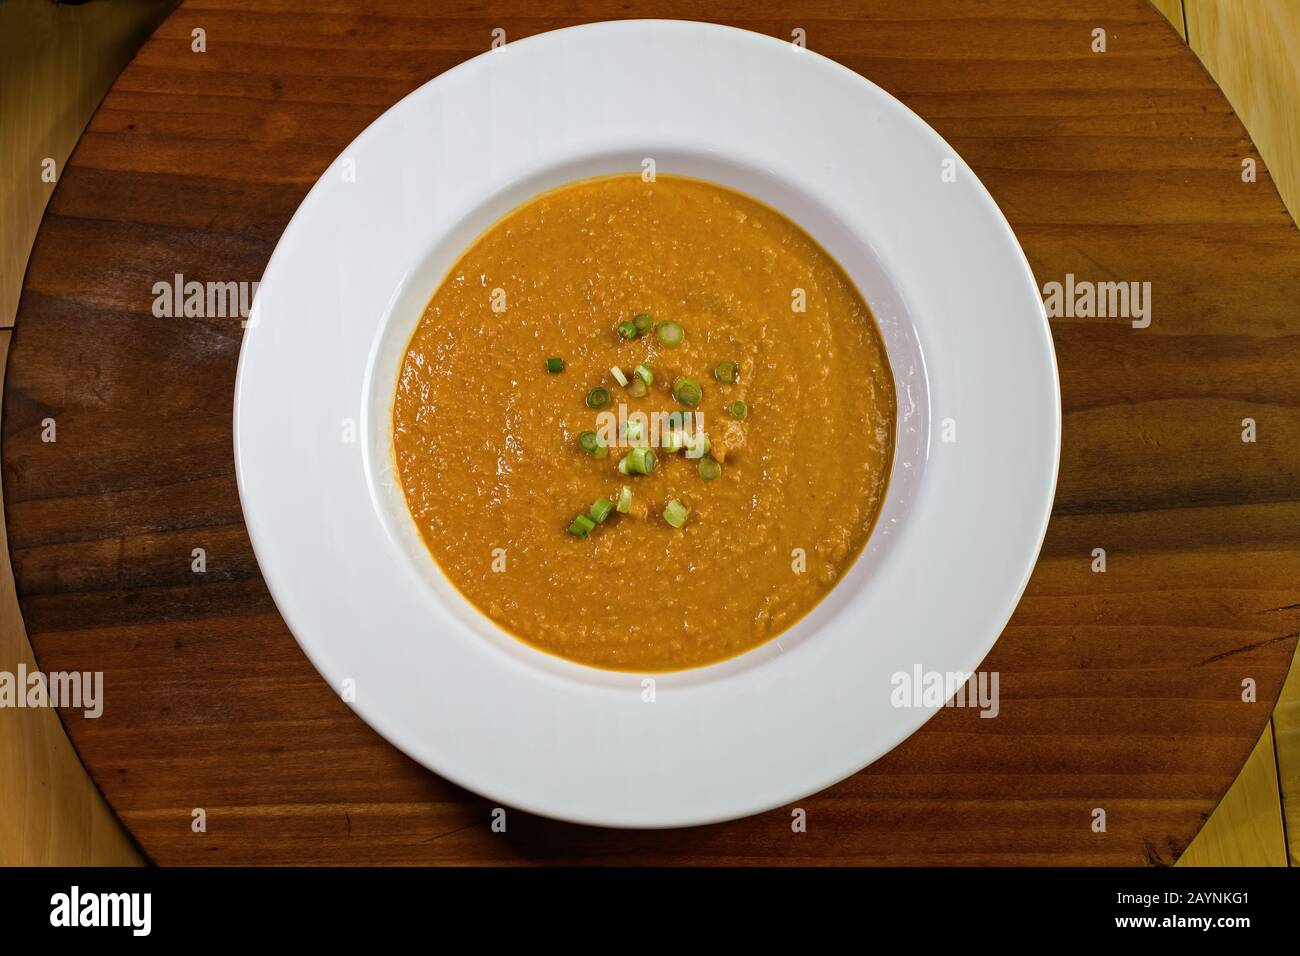 Soupe végétarienne sans gluten à l'arachide ou soupe aux arachides dans un bol. Il est fait d'arachides, souvent avec des carottes, des patates douces et des échalotes. Il s'agit d'un stap Banque D'Images